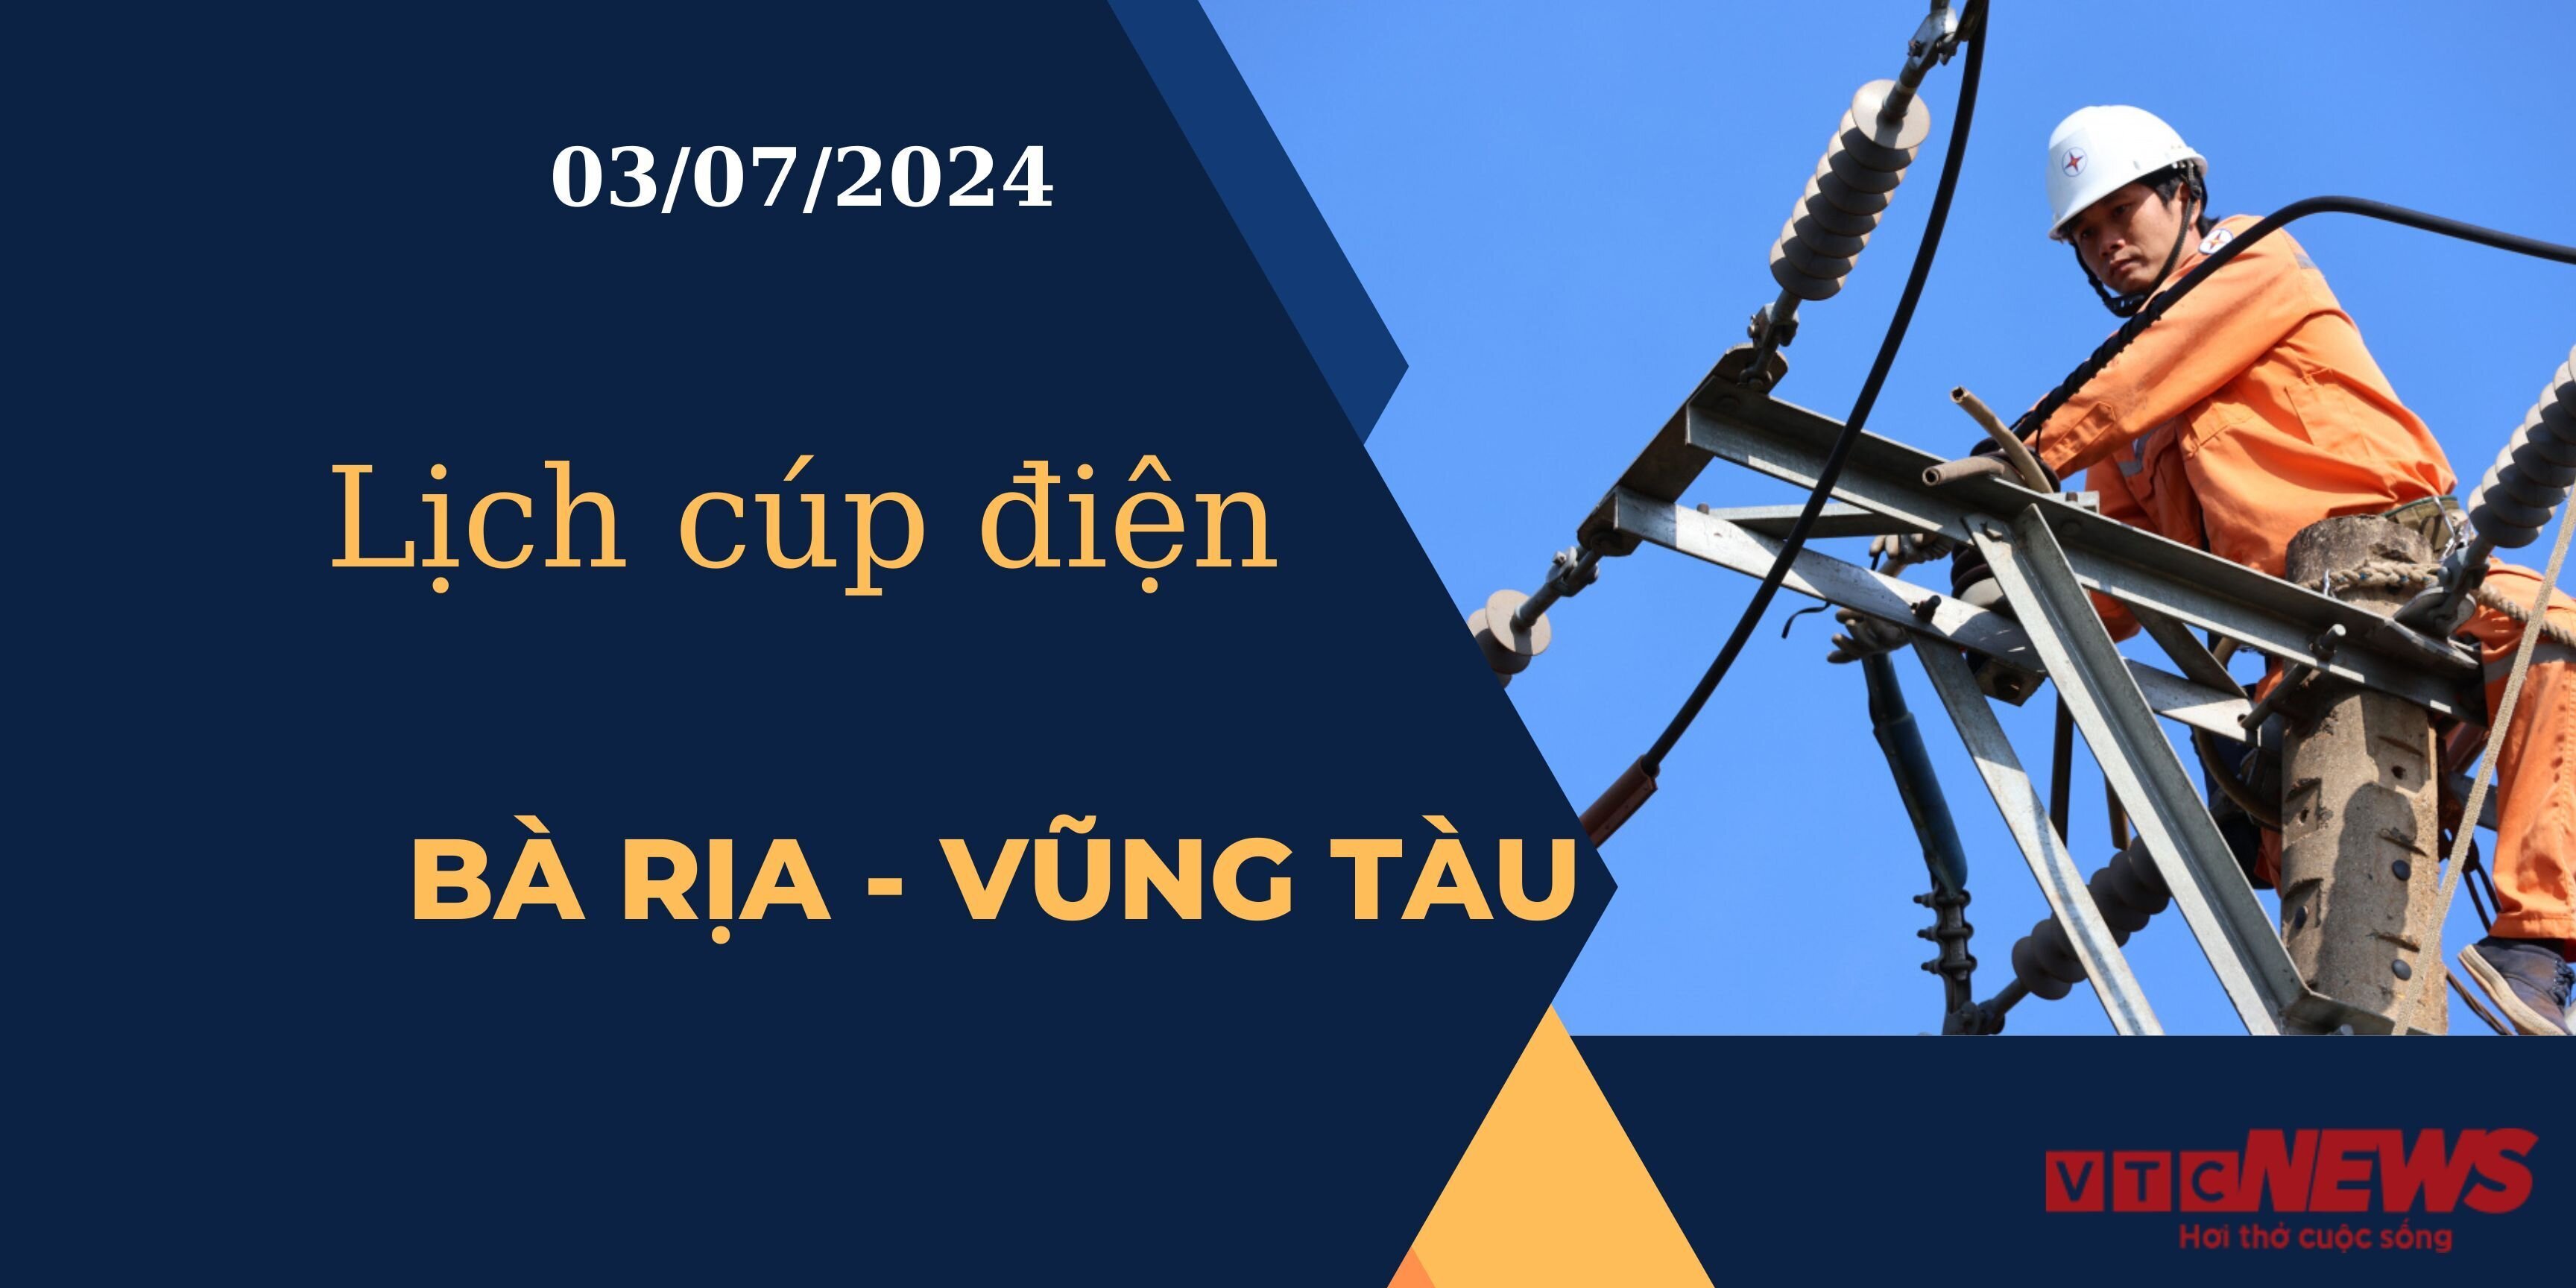 Lịch cúp điện hôm nay tại Bà Rịa - Vũng Tàu ngày 03/07/2024